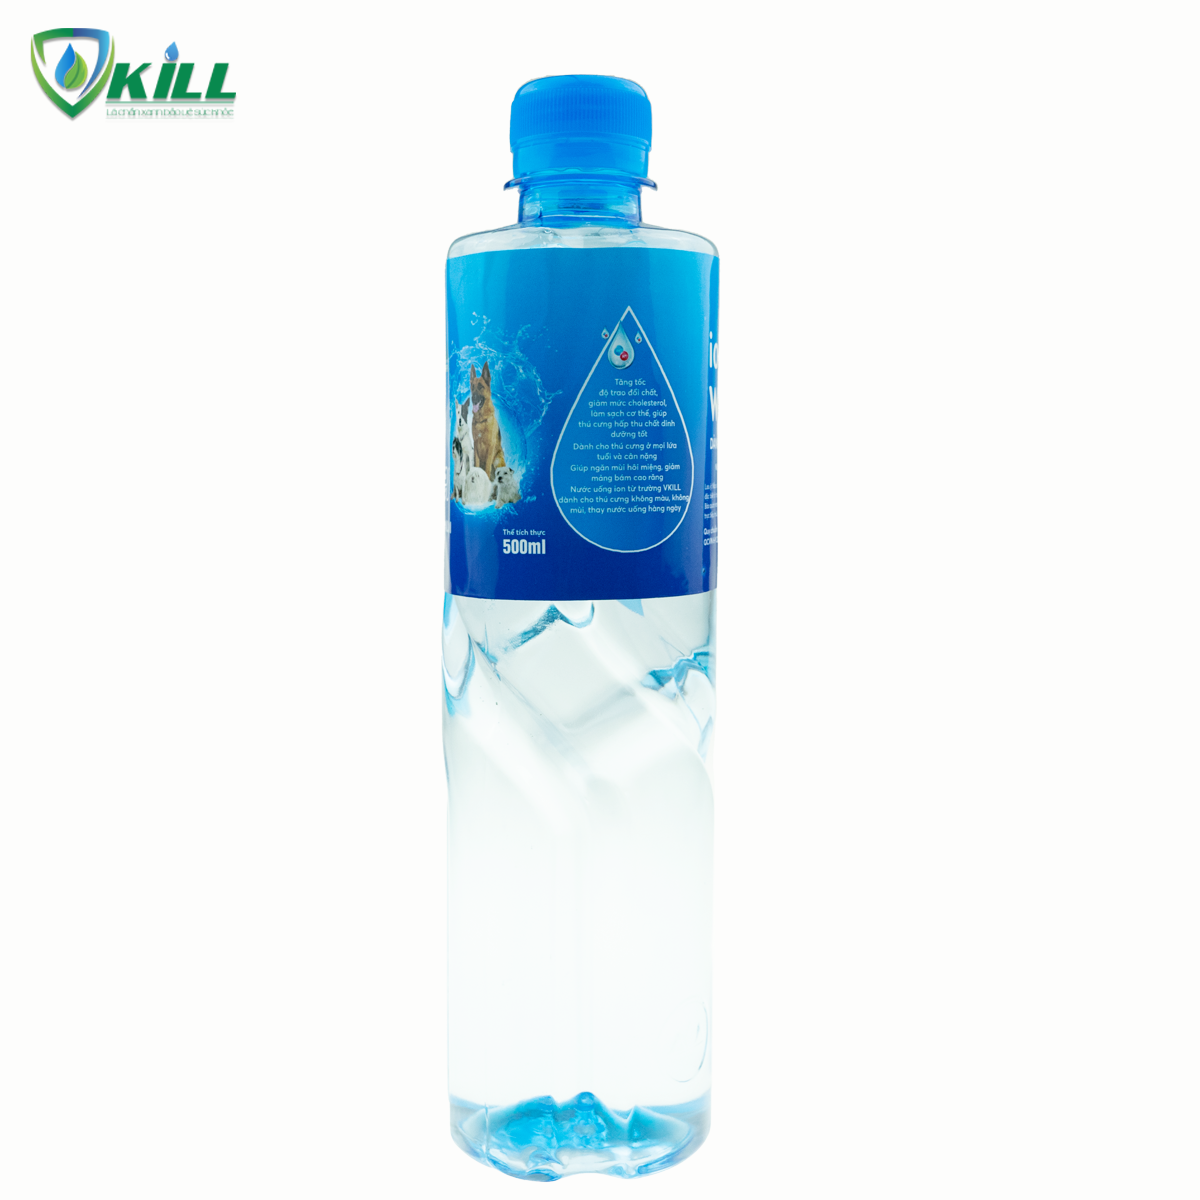 Nước uống cho chó mèo thú cưng vật nuôi Vkill Ion Water Pet 500ml giúp tăng cường trao đổi chất ngừa hôi miệng tăng đề kháng